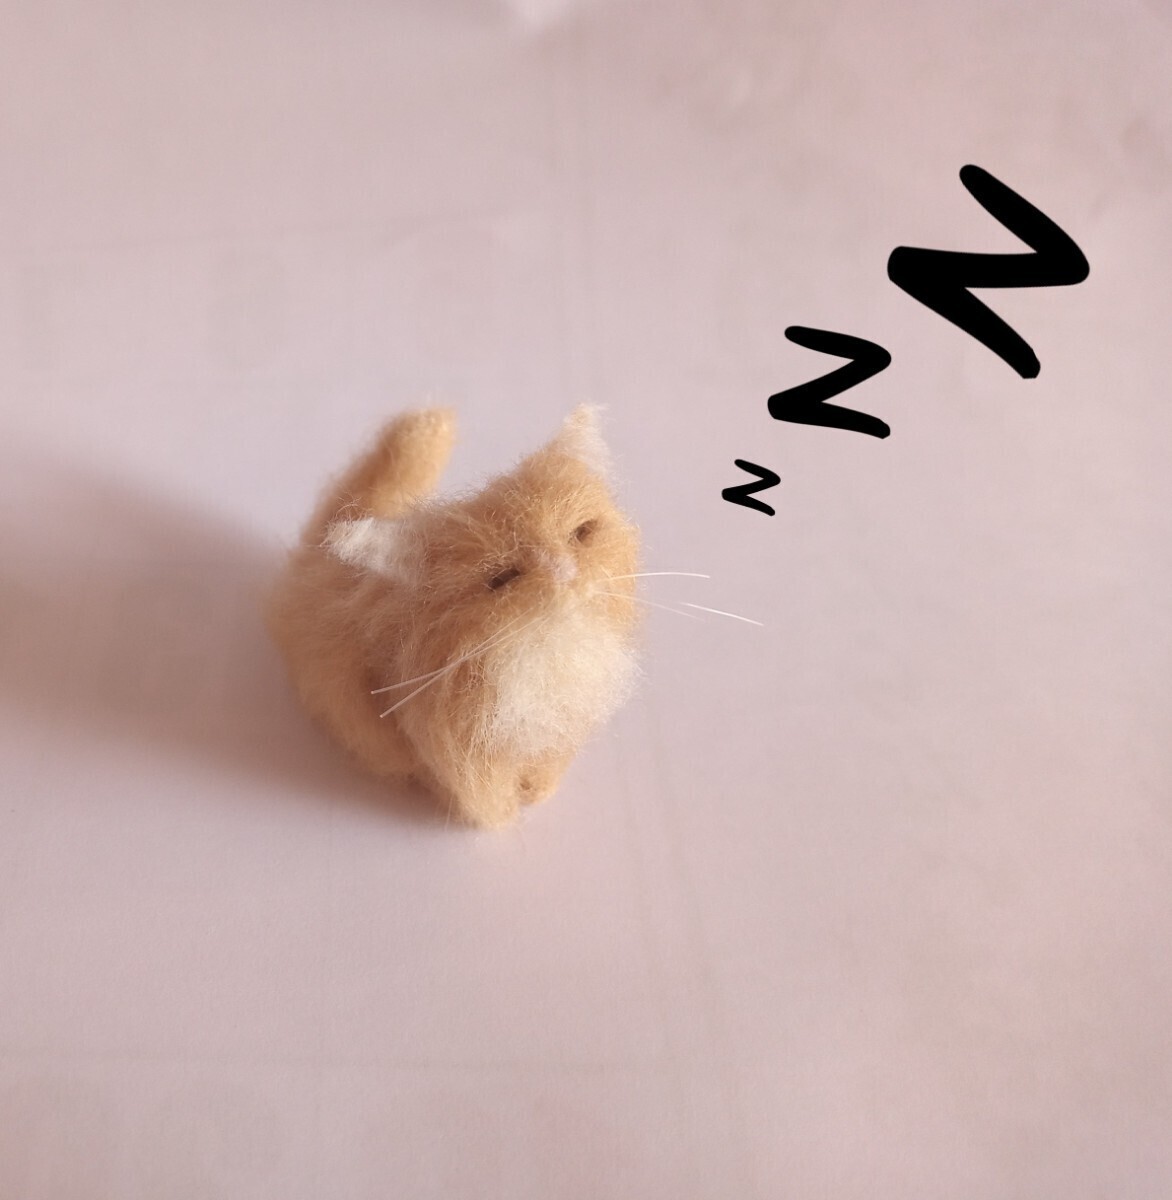  шерстяной войлок кошка [K] кошка mi-m храп кошка произведение . temi .! шерстяной войлок ручная работа миниатюра кукольный дом ладонь размер кошка смешанные товары 